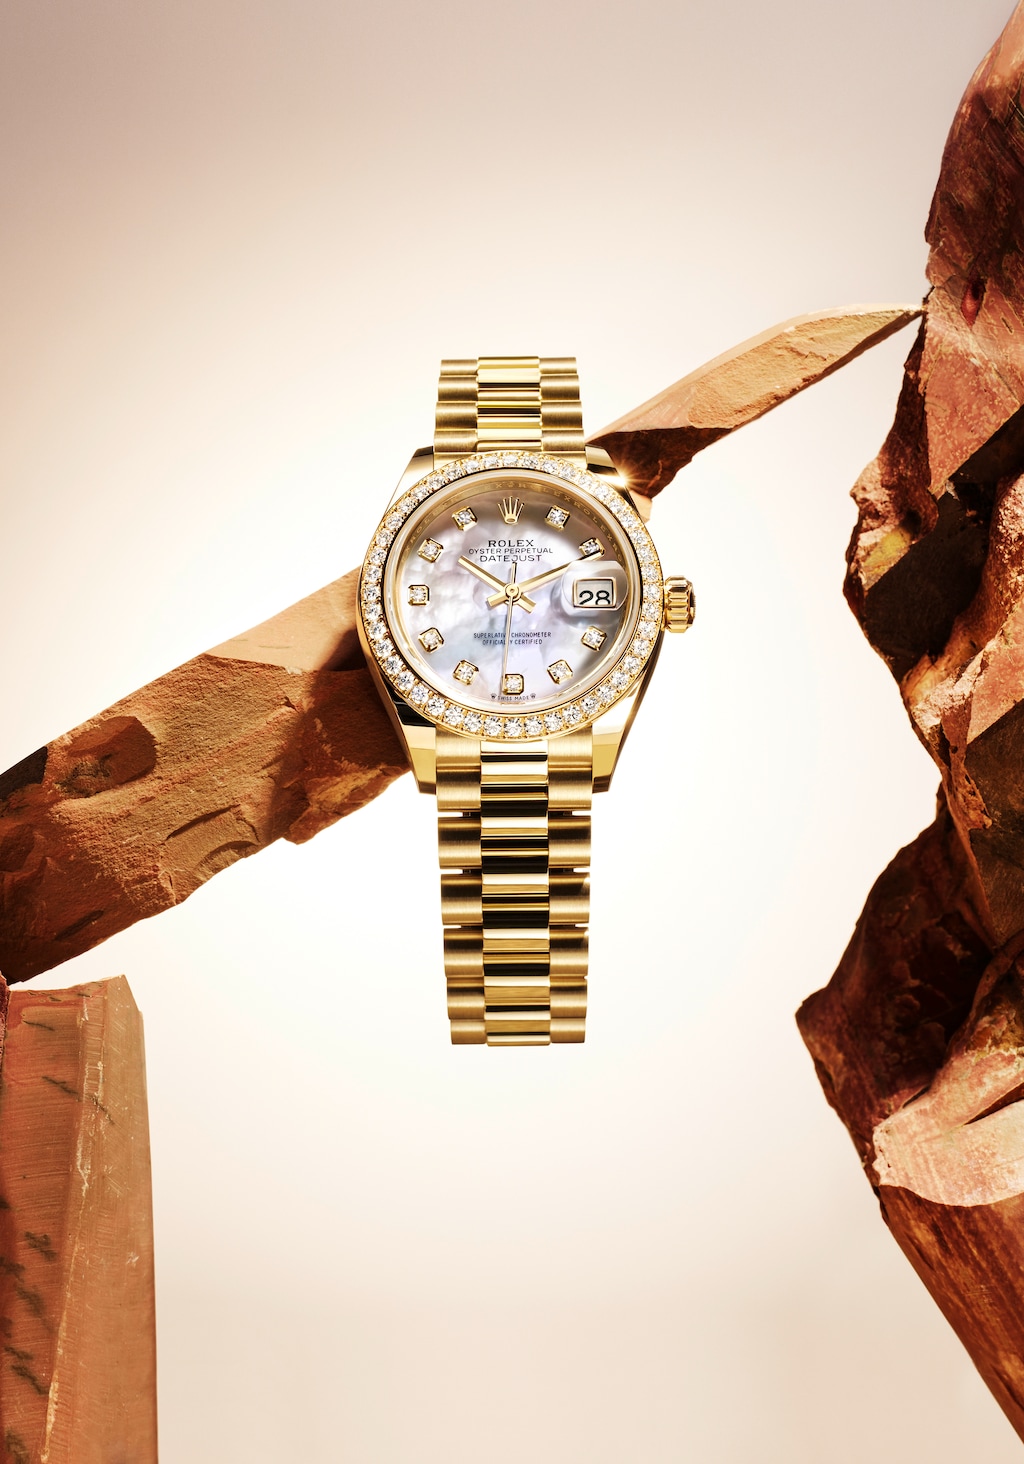 Đồng hồ Lady-Datejust phiên bản vàng vàng 18 ct